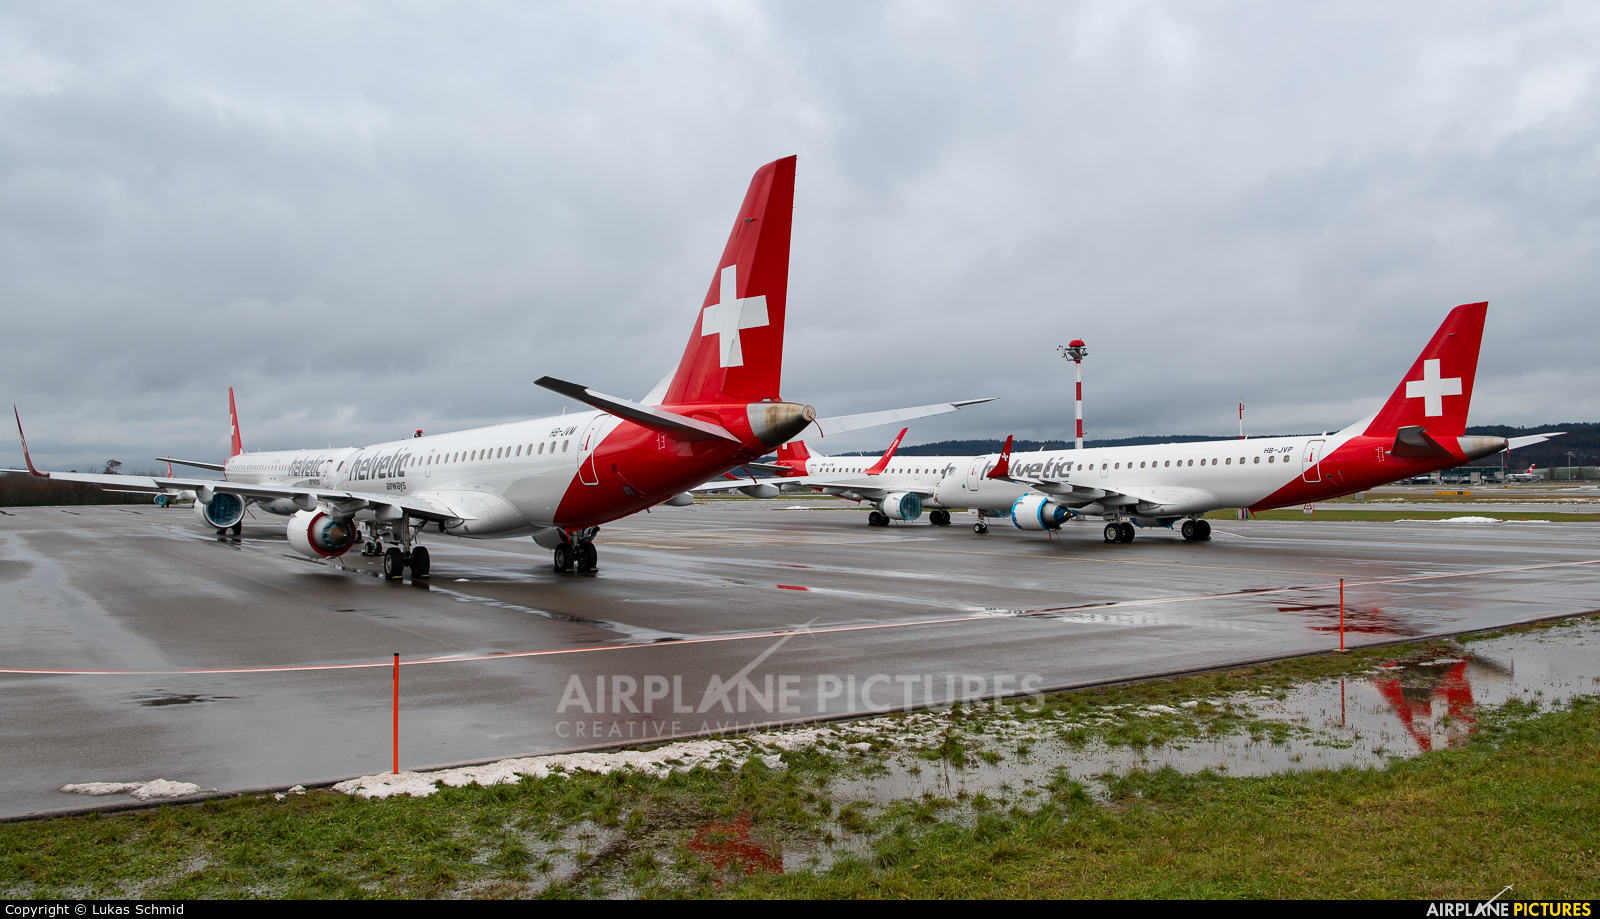 Helvetic Airways - aircraft at Zurich